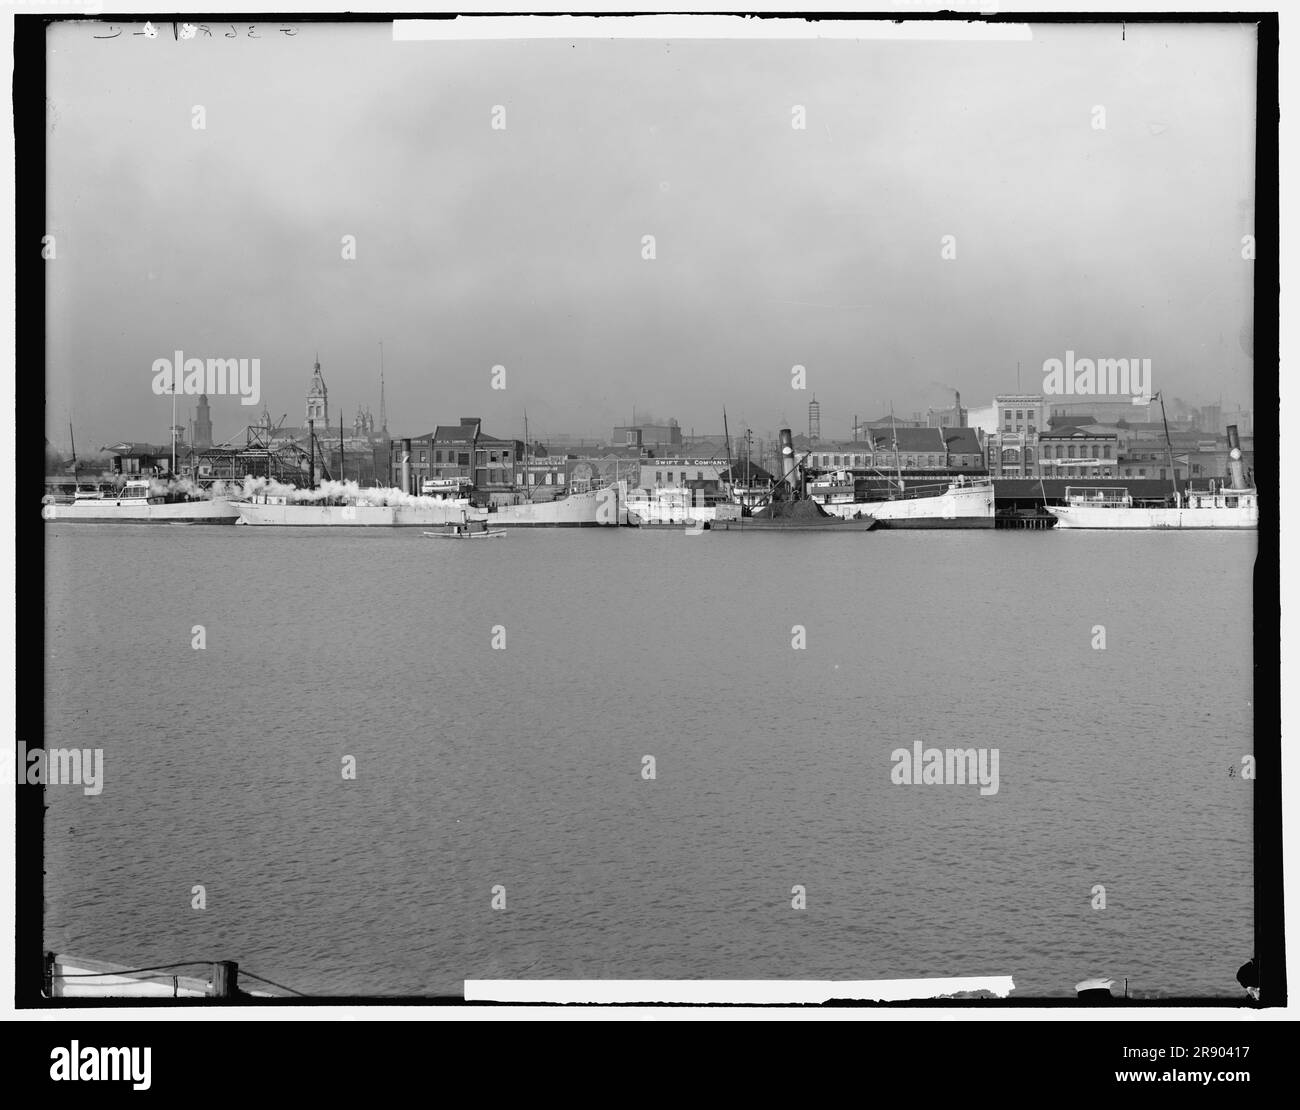 Die Uferpromenade, Mobile, Alabama, c1906. Hafen am Mobile River - Frachtschiffe am Kai, Kohleschlepper, Fleischlager, Segelhersteller und Schiffsausrüster. Stockfoto